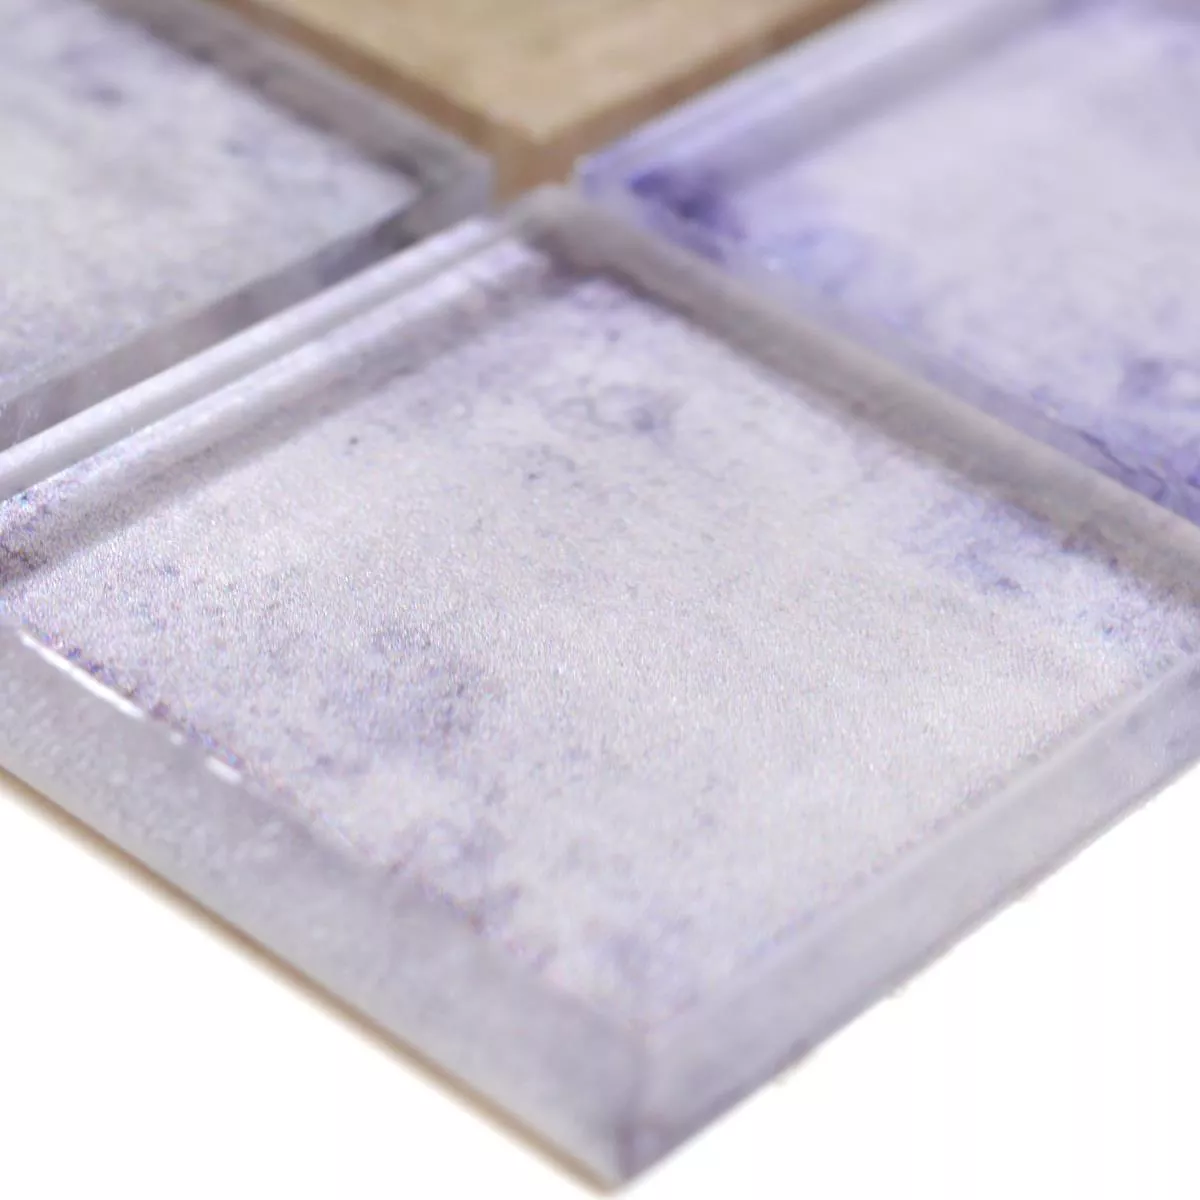 Próbka Mozaika Szklana Płytki Clementine Niebieski